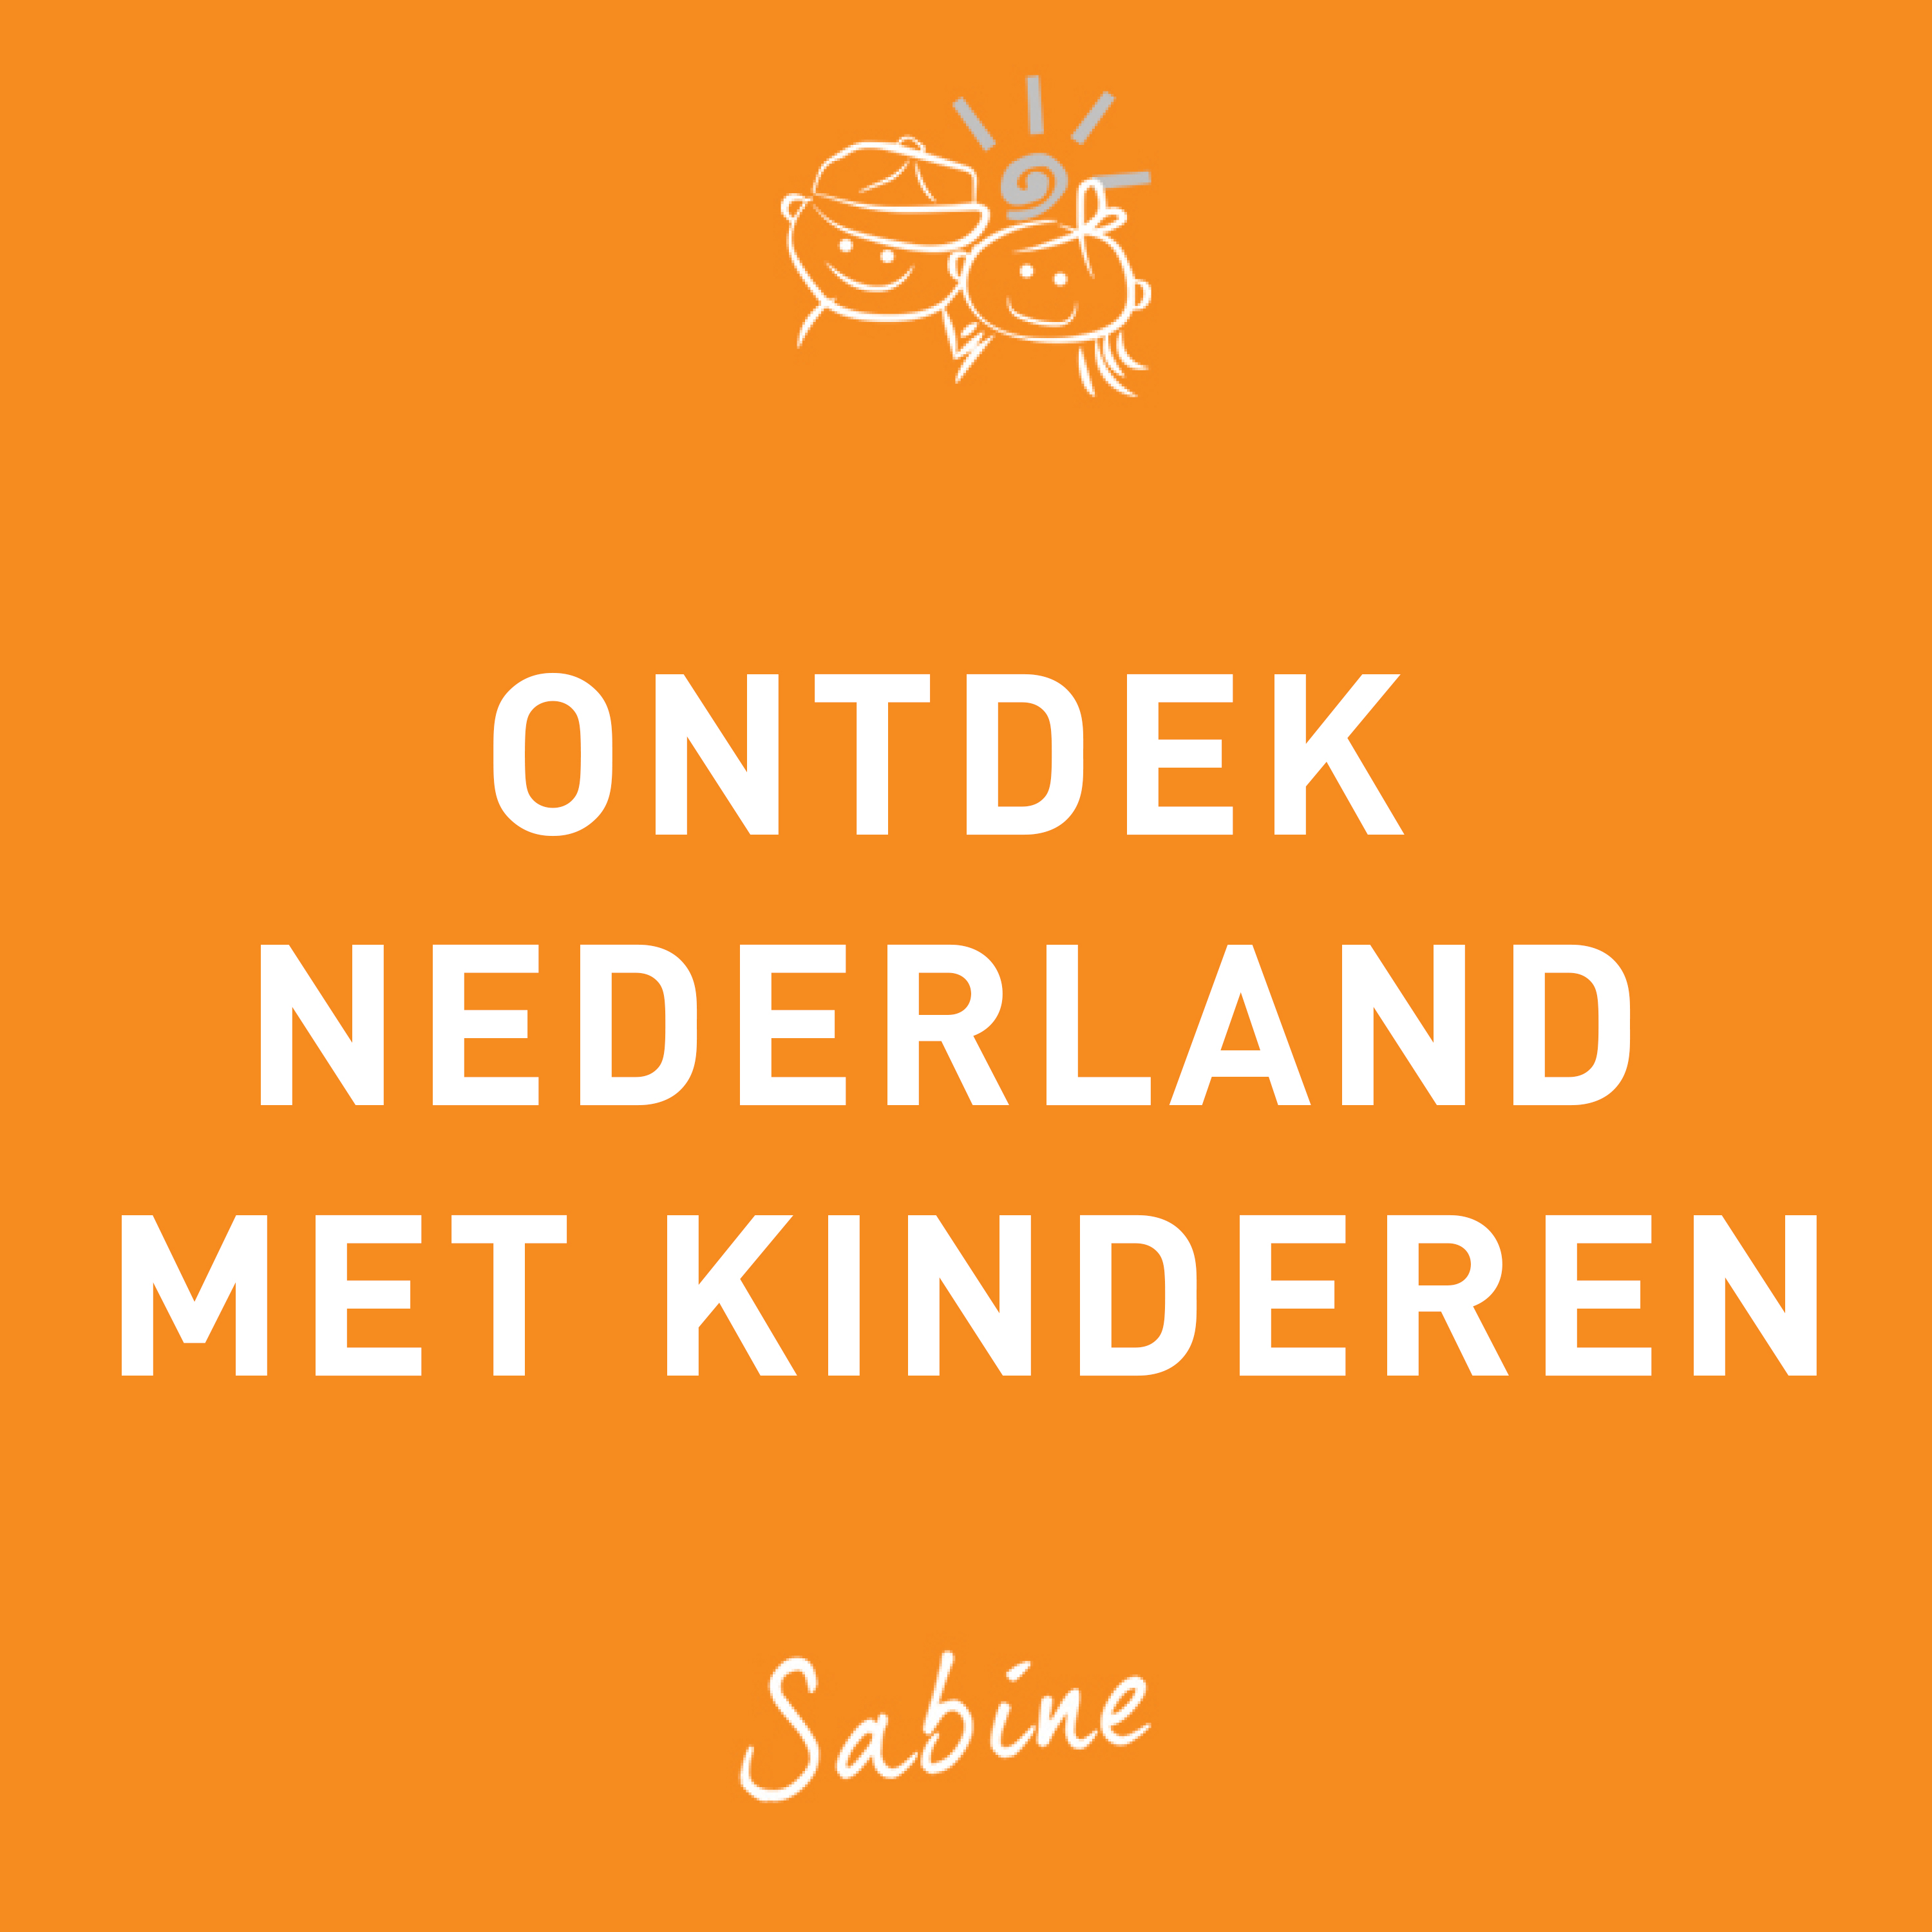 Ontdek Nederland als vakantieland met kinderen!